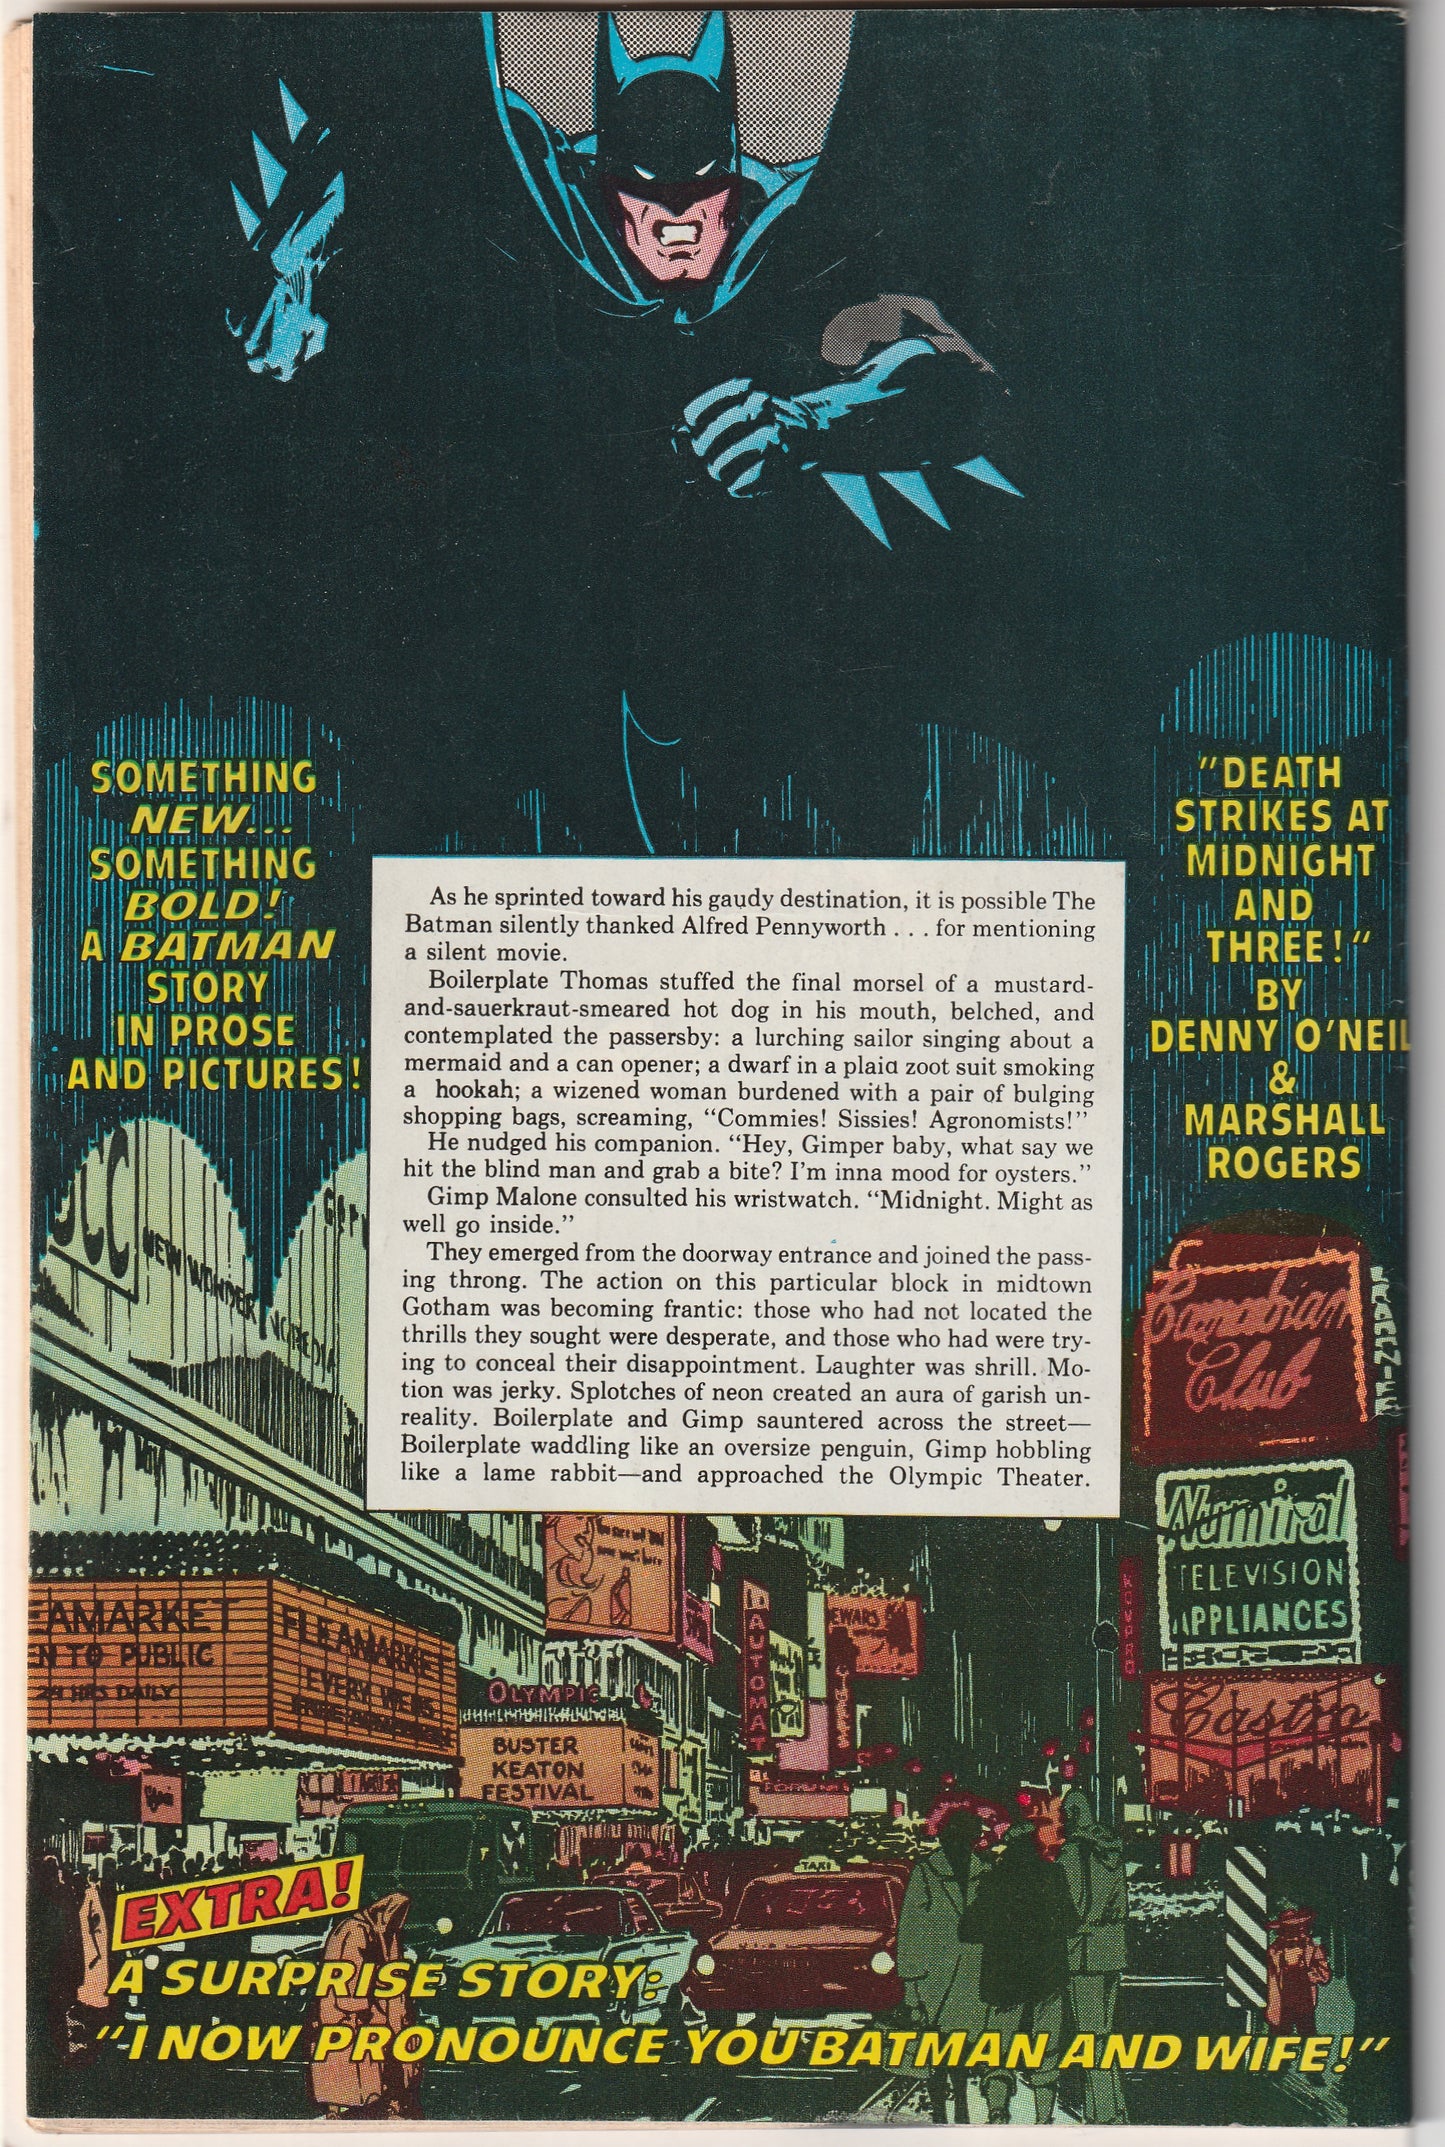 Batman Spectacular - DC Special Series Vol 2 #15 (Summer 1978)